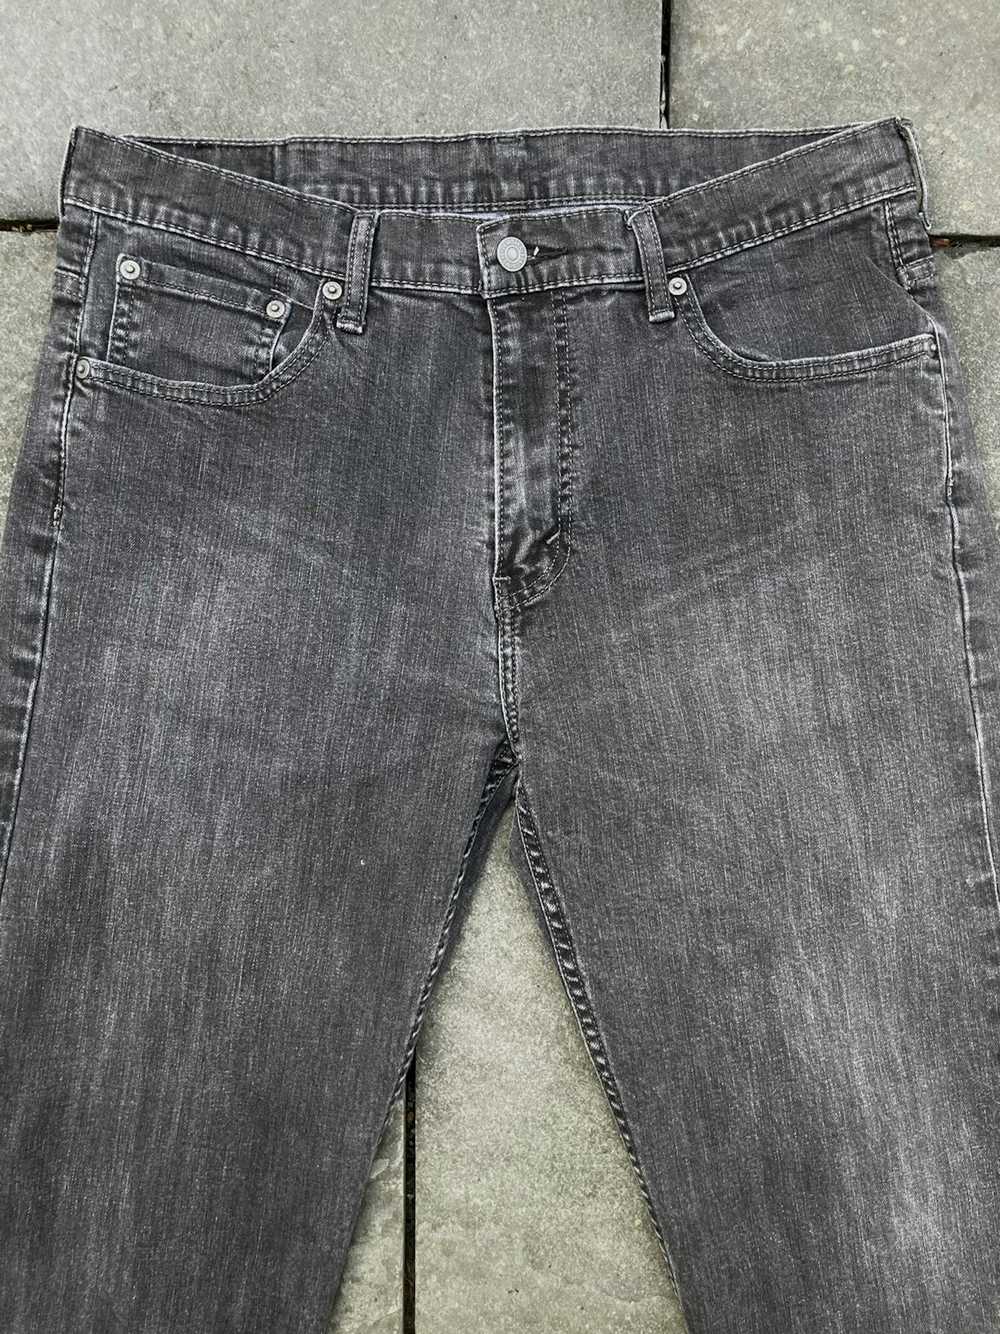 Levi's Levis 569 Grey Wash Denim Jeans - image 4